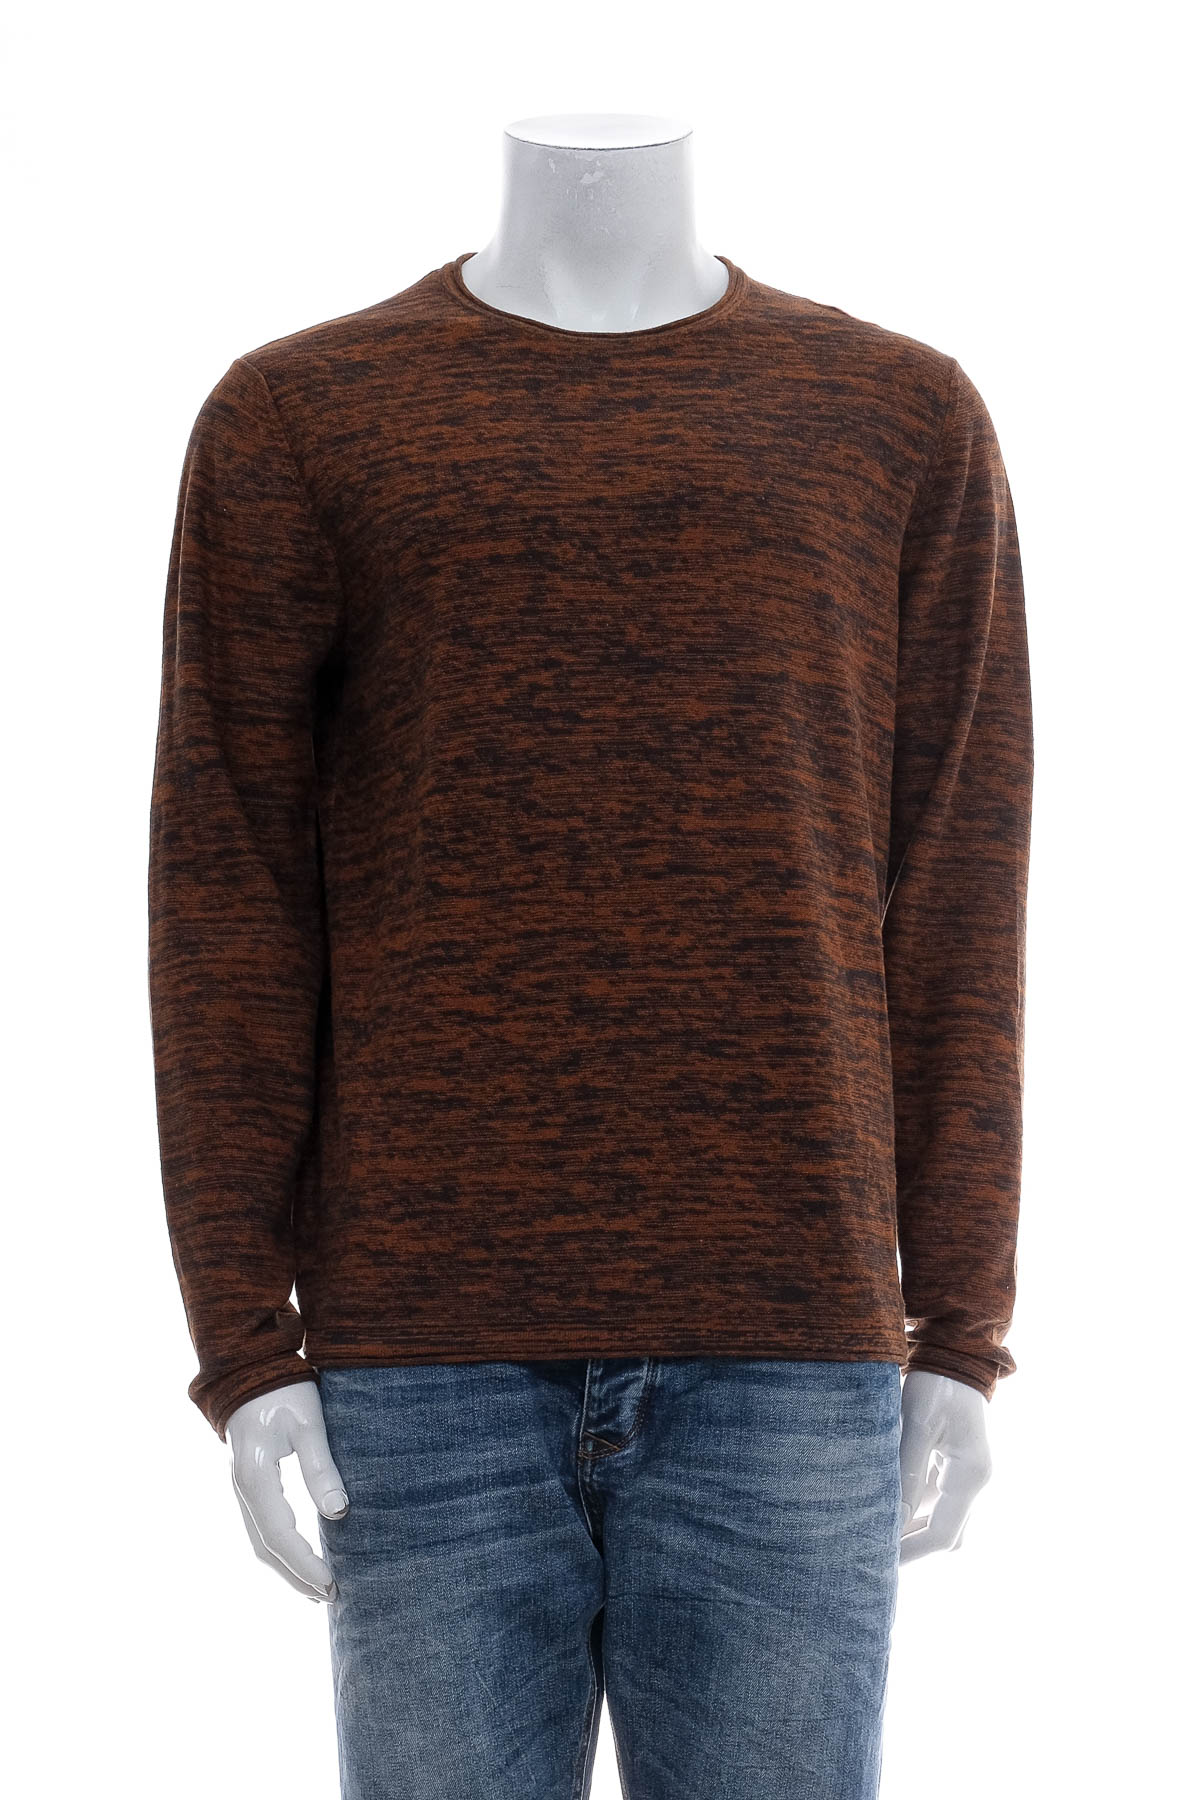 Men's sweater - Manguun - 0